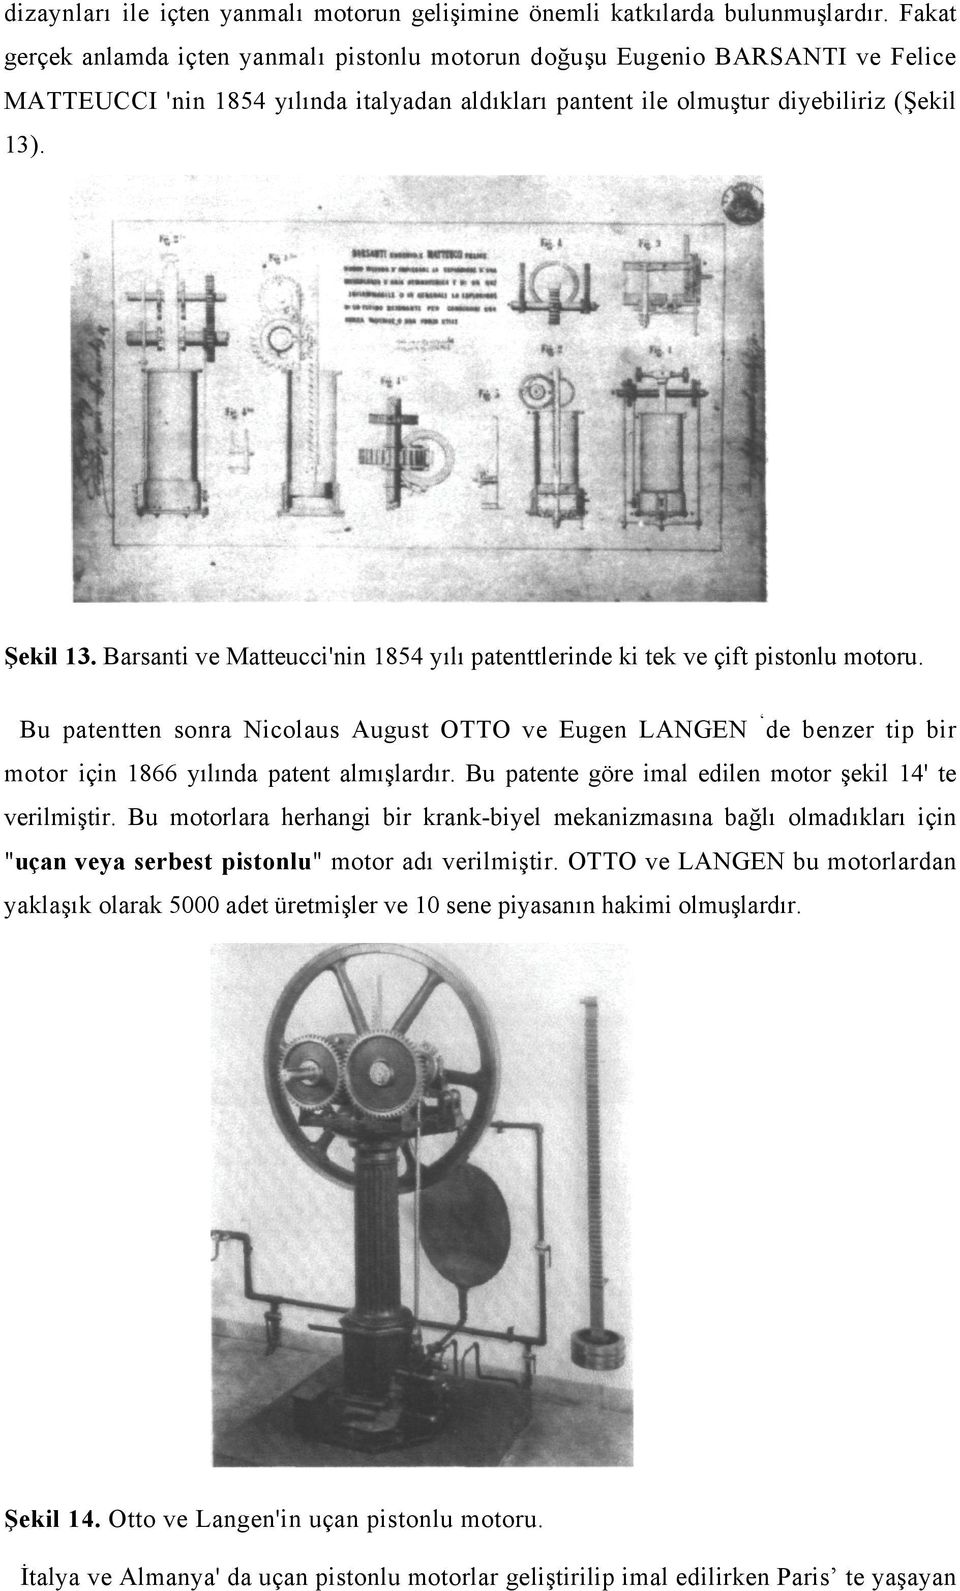 Barsanti ve Matteucci'nin 854 yılı patenttlerinde ki tek ve çift pistonlu motoru. Bu patentten sonra Nicolaus August OO ve Eugen LANGEN de benzer tip bir motor için 866 yılında patent almışlardır.